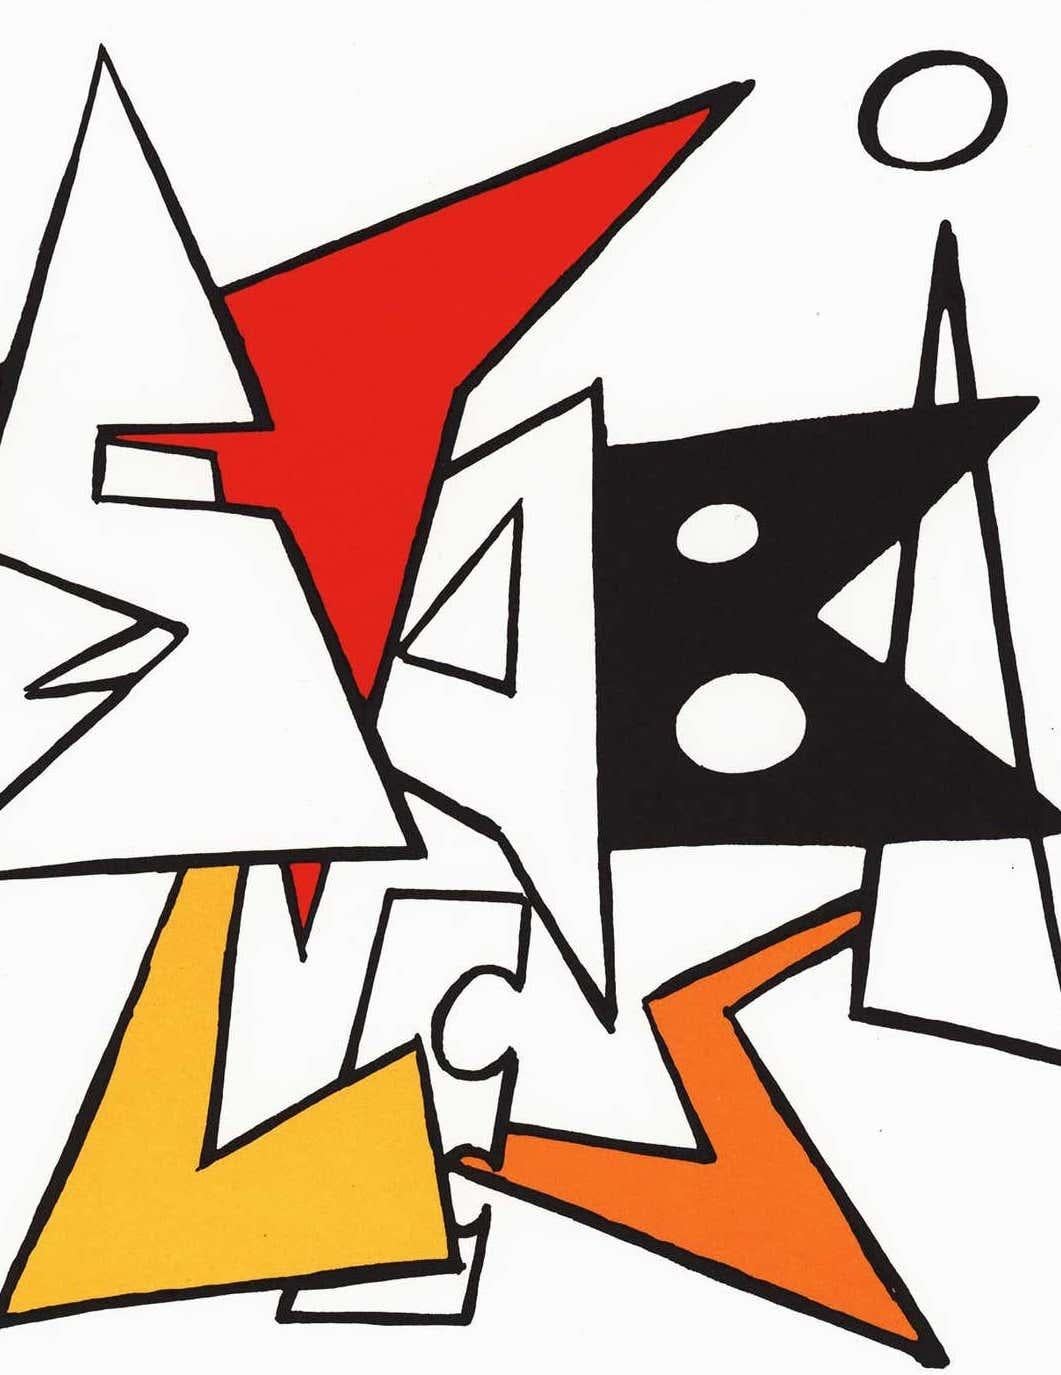 Alexander Calder Lithographischer Umschlag um 1963 aus Derrière le miroir:

Lithographisches Deckblatt in Farben; 11 x 15 Zoll.
Insgesamt sehr guter Vintage-Zustand.
Unsigniert aus einer unbekannten Auflage mit knackig hellen Farben.
Herausgegeben